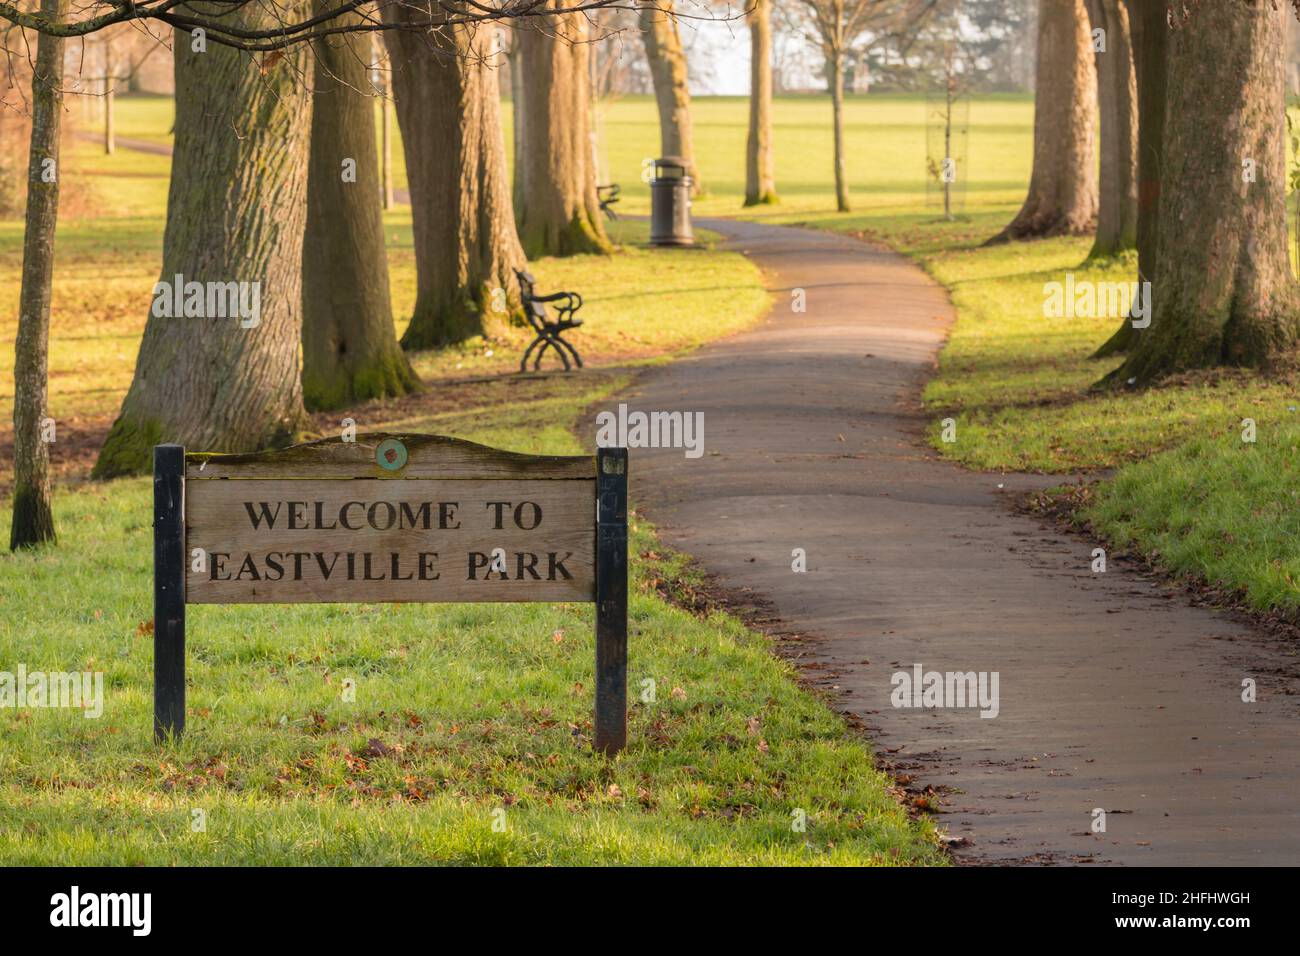 Eastville Park Stock Photo